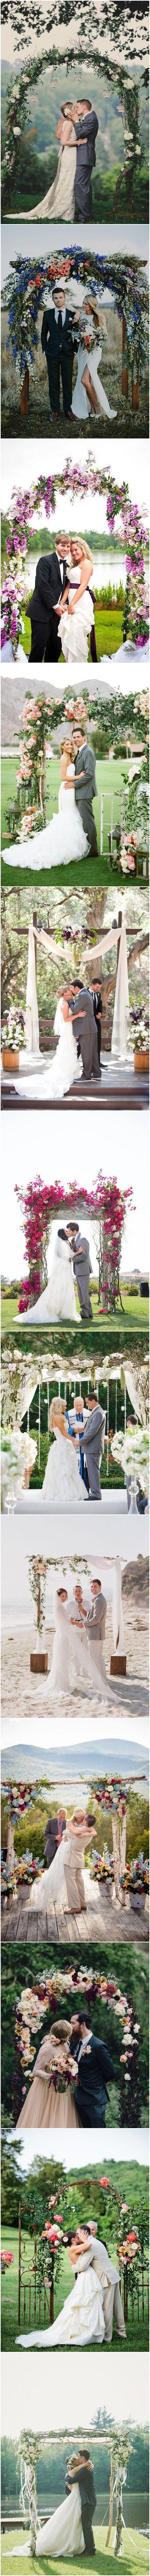 Wedding - 26 Floral Wedding Arches Decorating Ideas